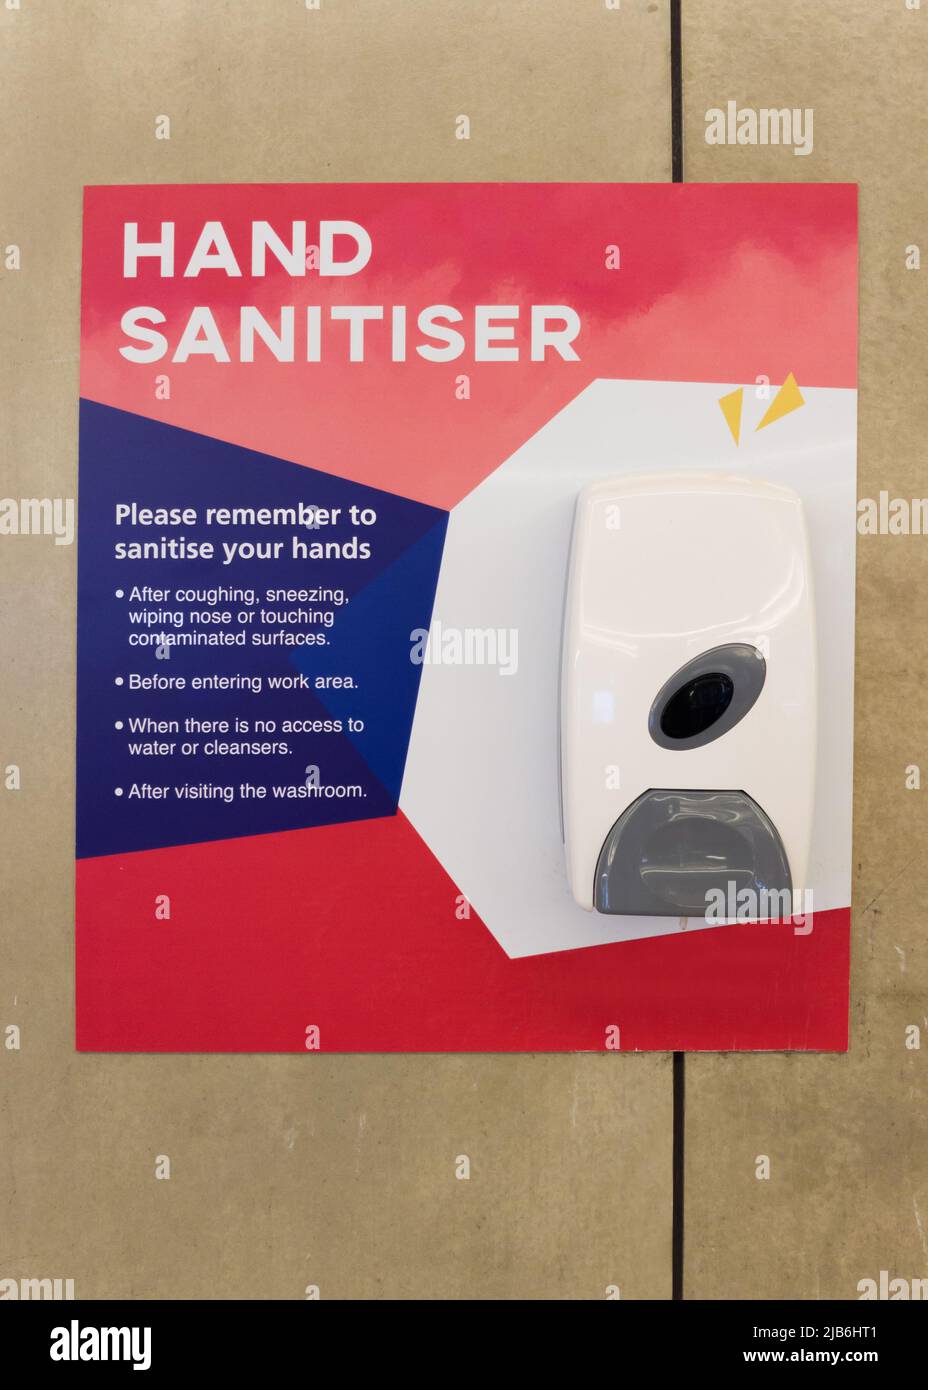 Distributeur de gel de savon pour pompe à main murale dans le lieu de la comman. Lavage des mains et bonne hygiène pour prévenir la contamination par le coronavirus et les germes Banque D'Images